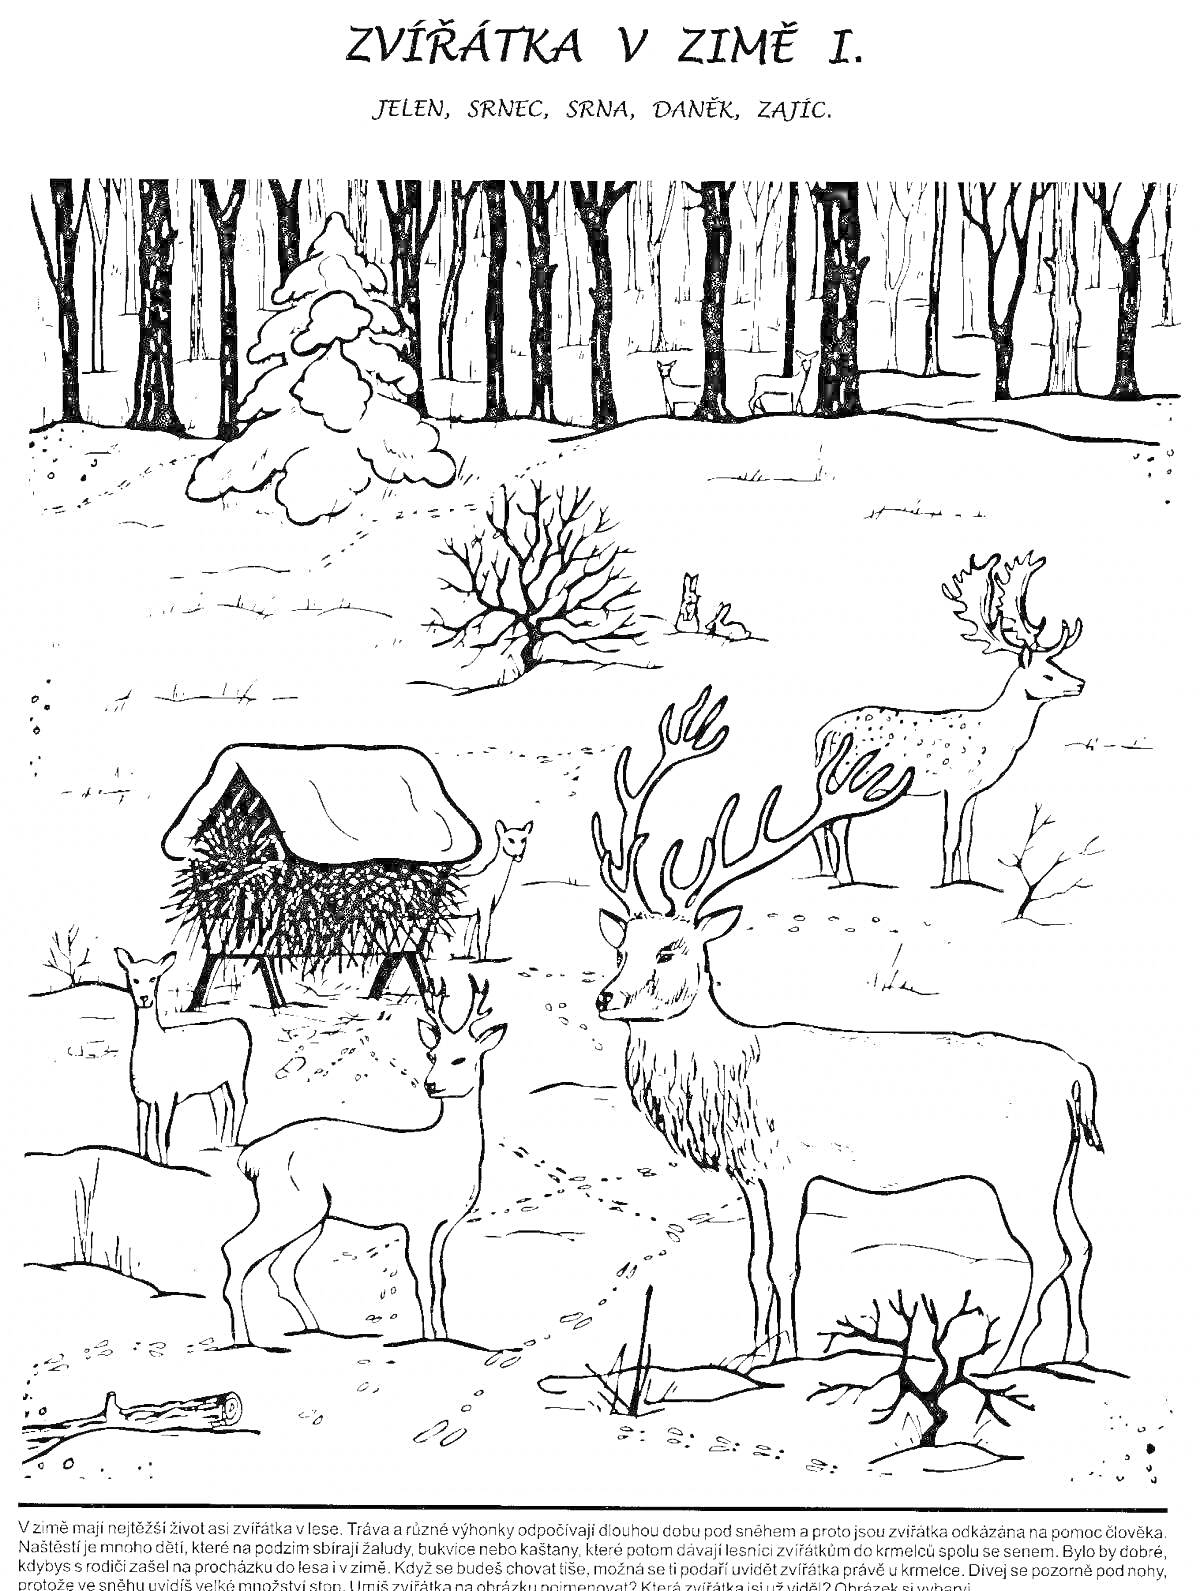 Раскраска Сцена зимовки животных: пять оленей, три дерева, куст, кормушка с крышей, хвойное дерево под снегом, два заячьих следа на снегу